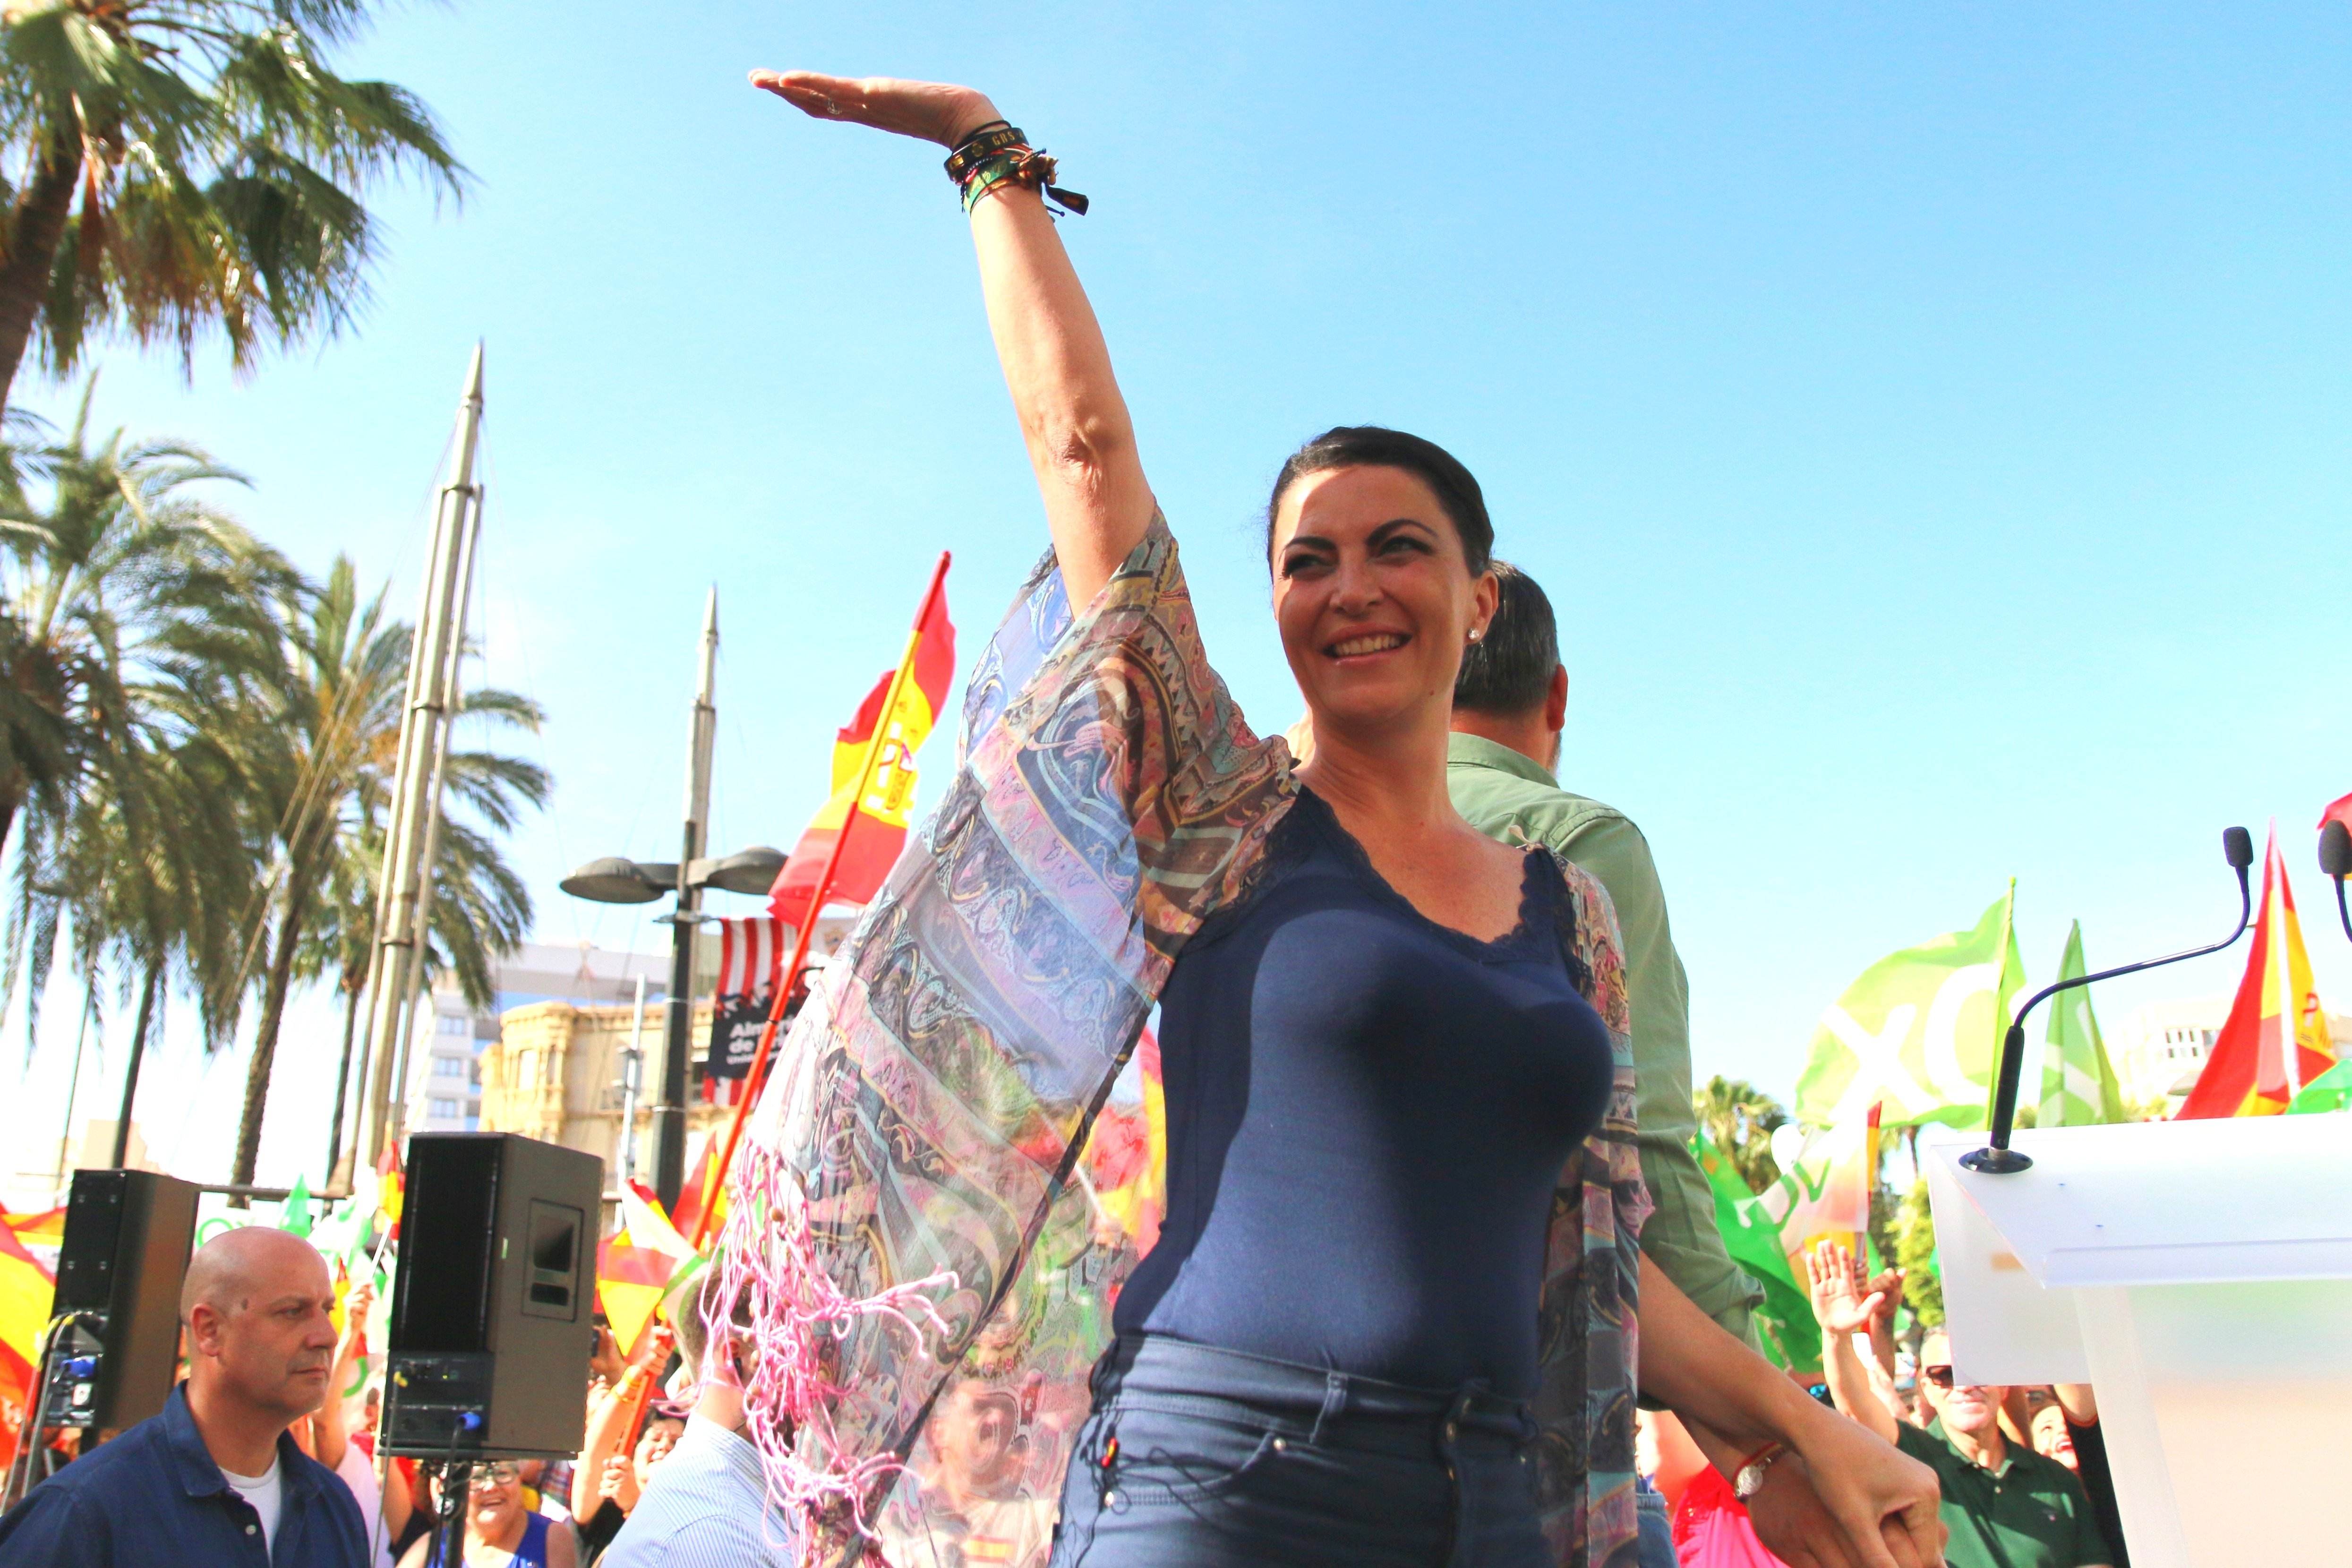 Vox tanca la porta del partit a Macarena Olona: "Ens està fent mal, aquí s'acaba el camí"